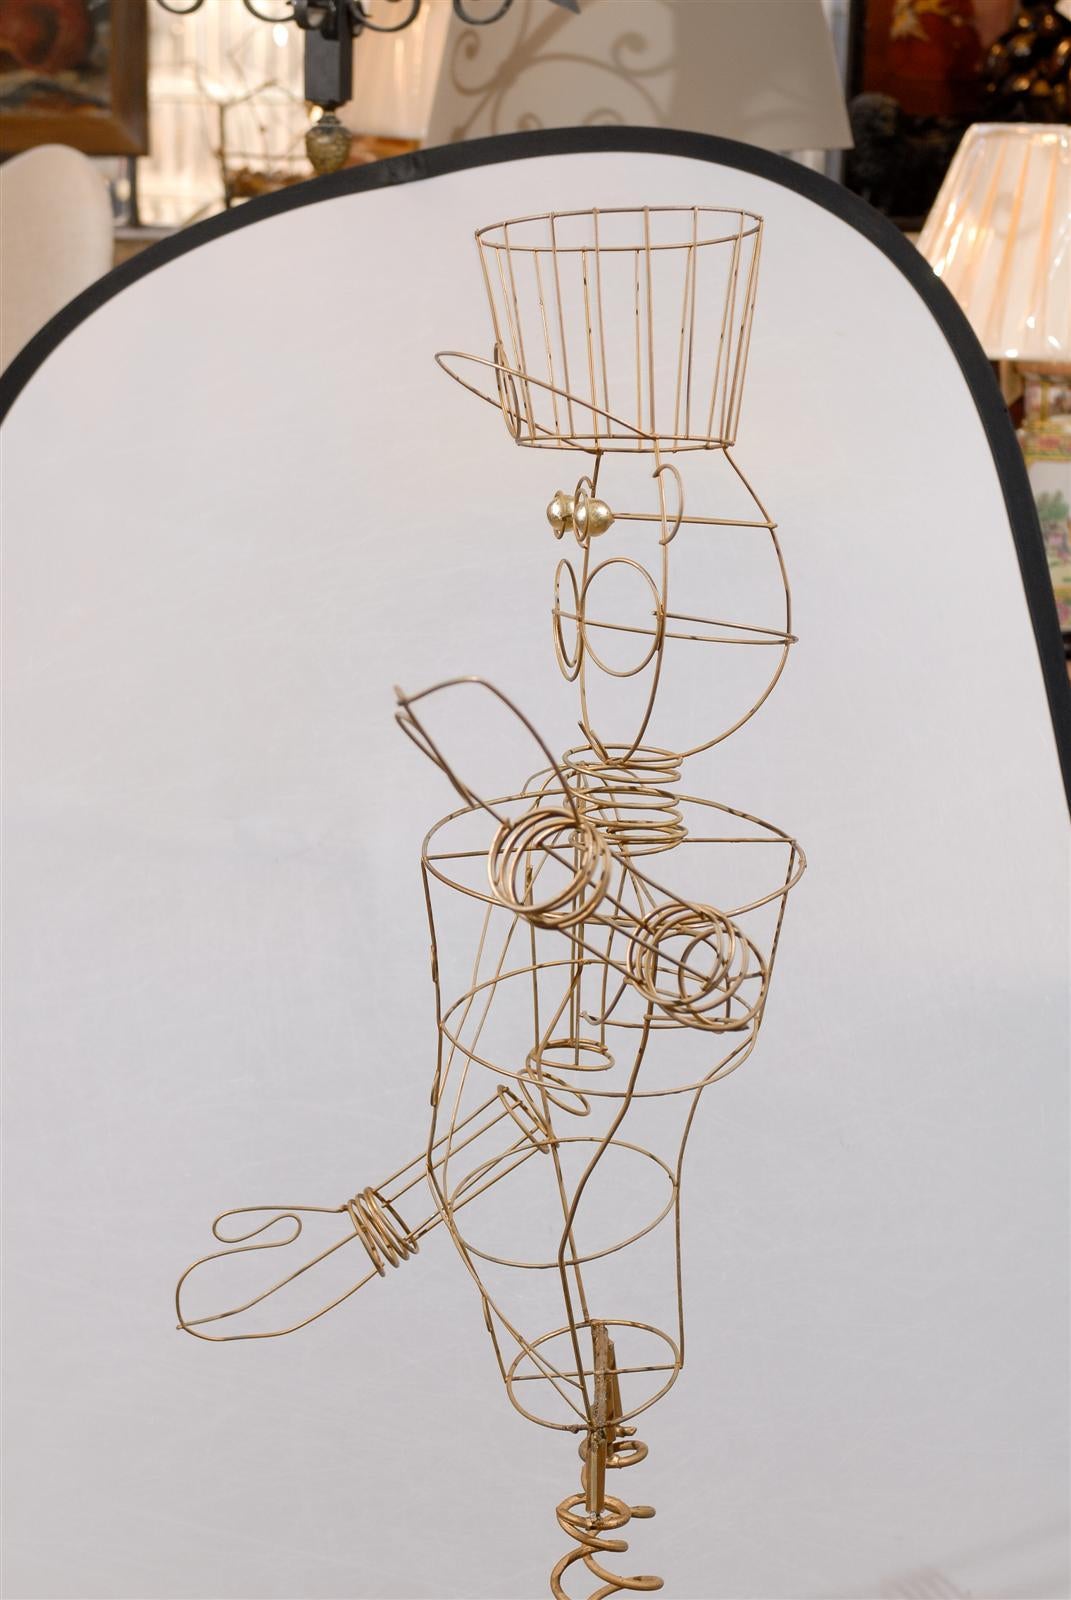 spring bonnie's endoskeleton